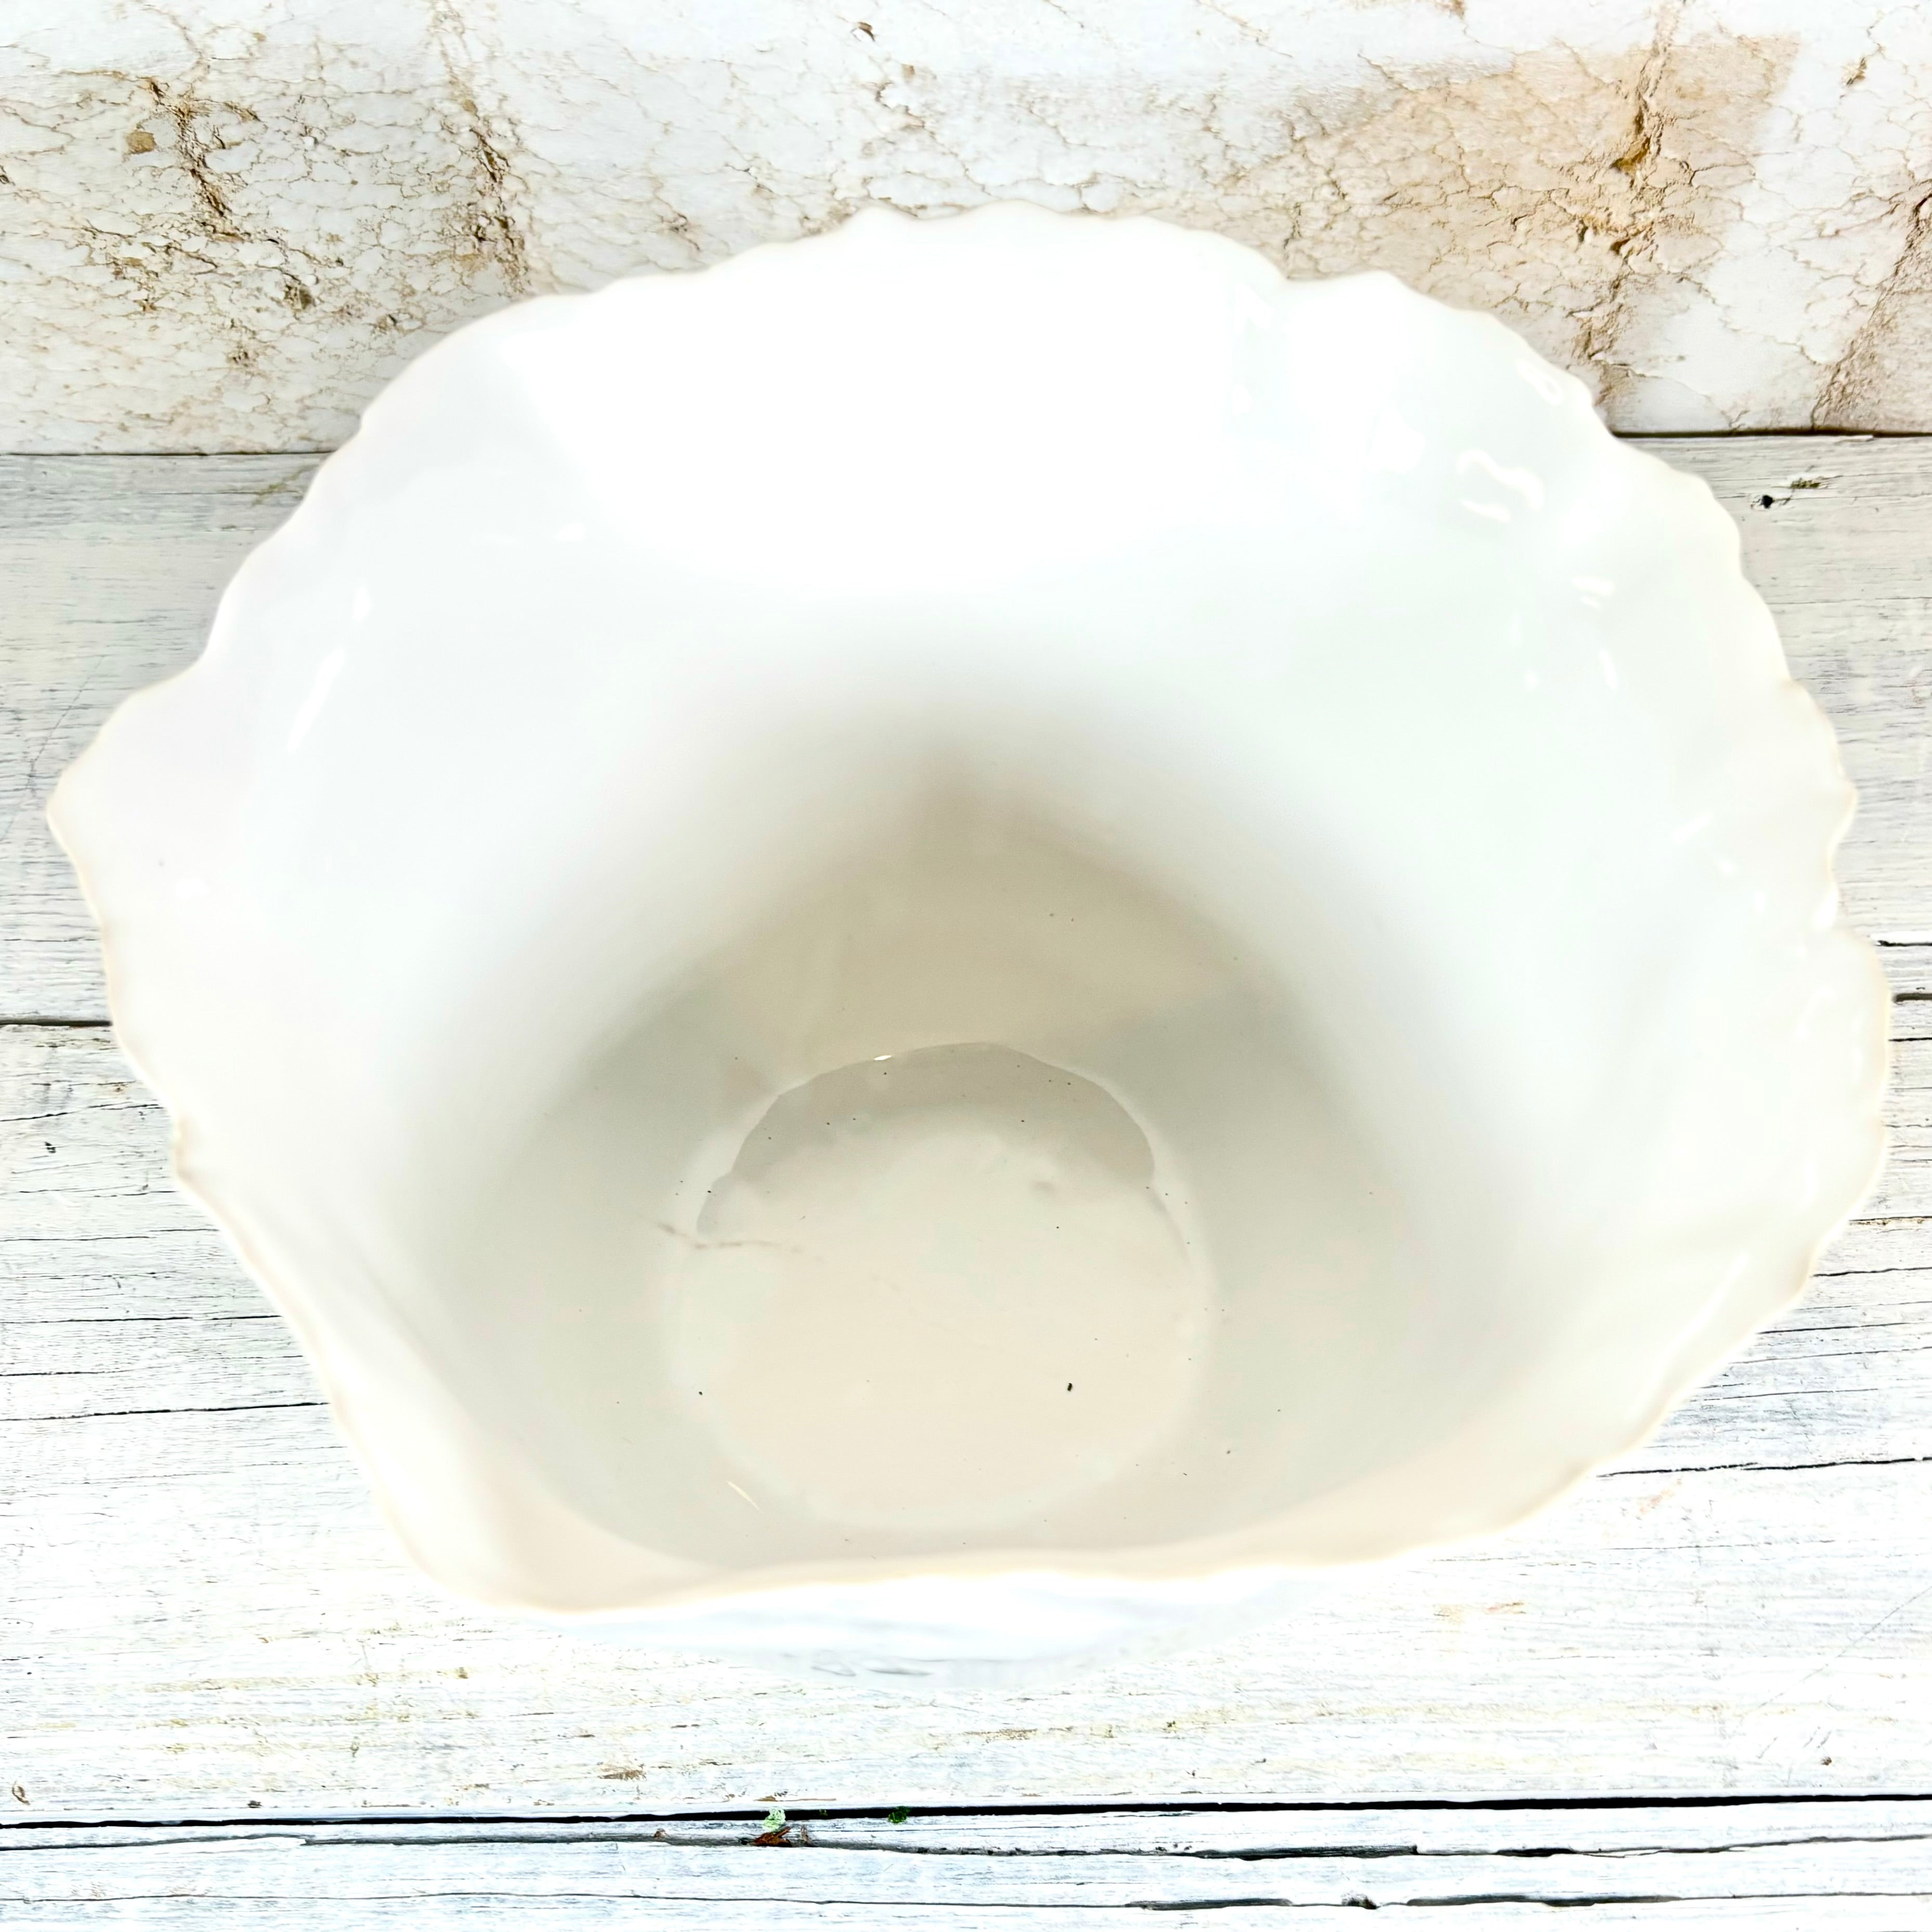 Ceramic Pot White Shiny Large